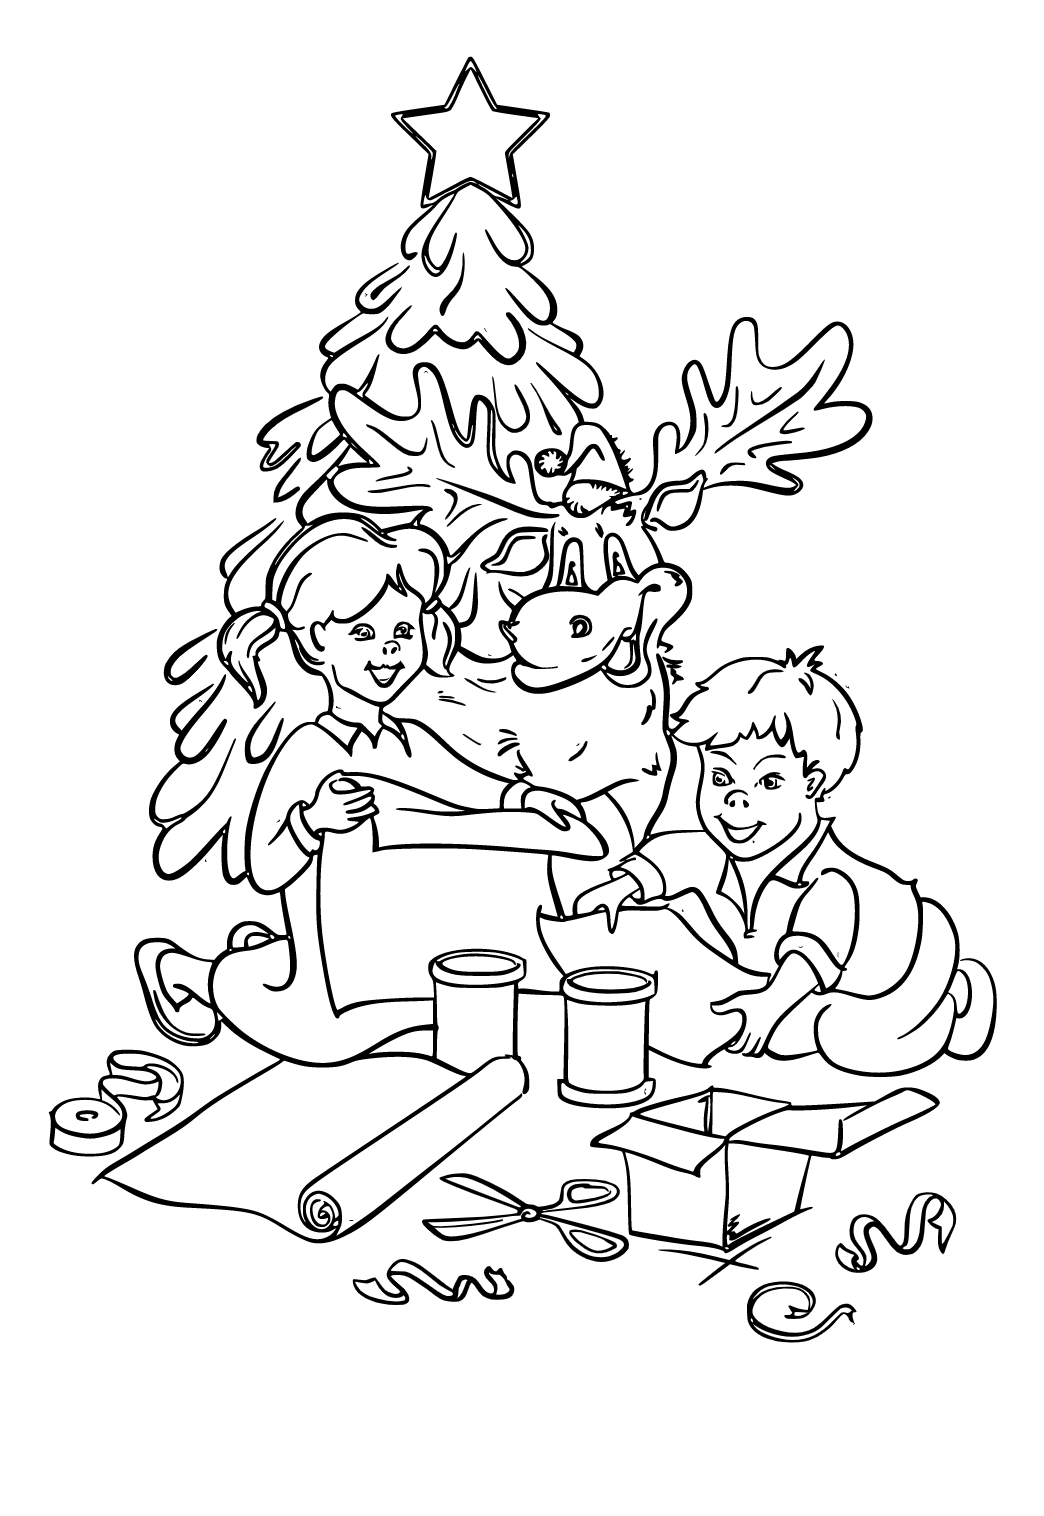 עץ חג המולד